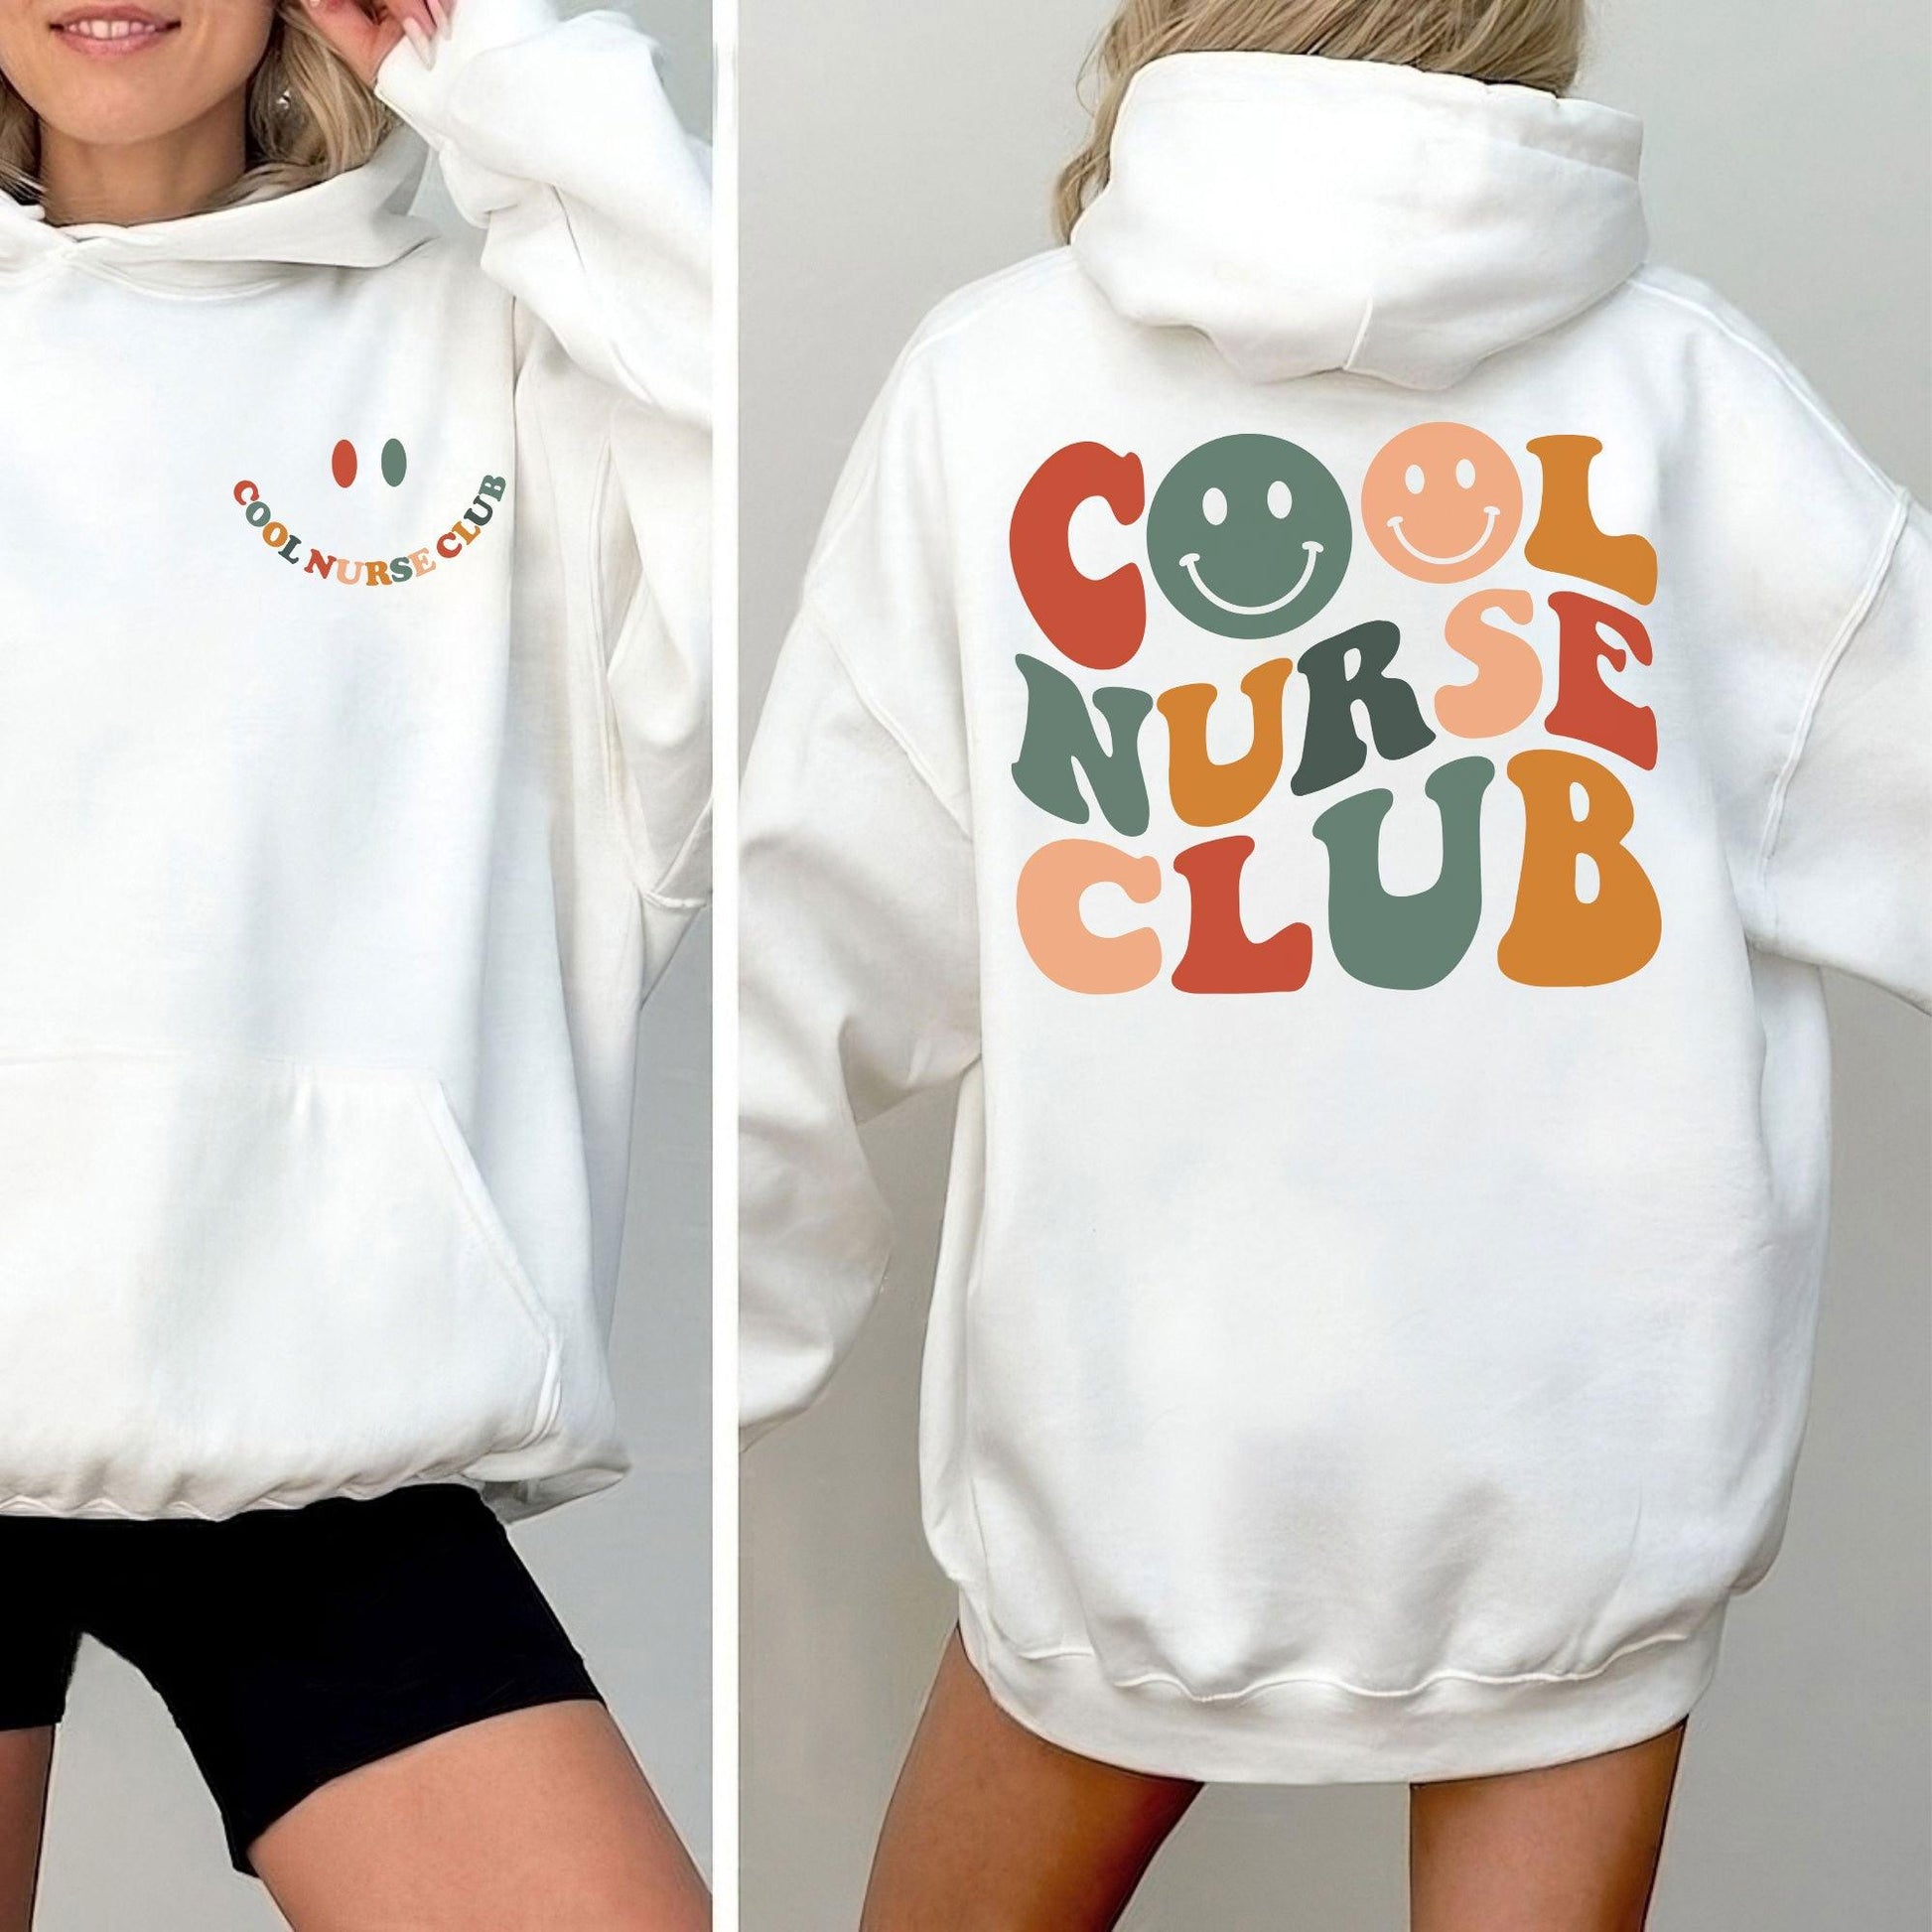 Cooles Nurse Club Sweatshirt und Hoodie - Geschenk für Krankenschwester - GiftHaus